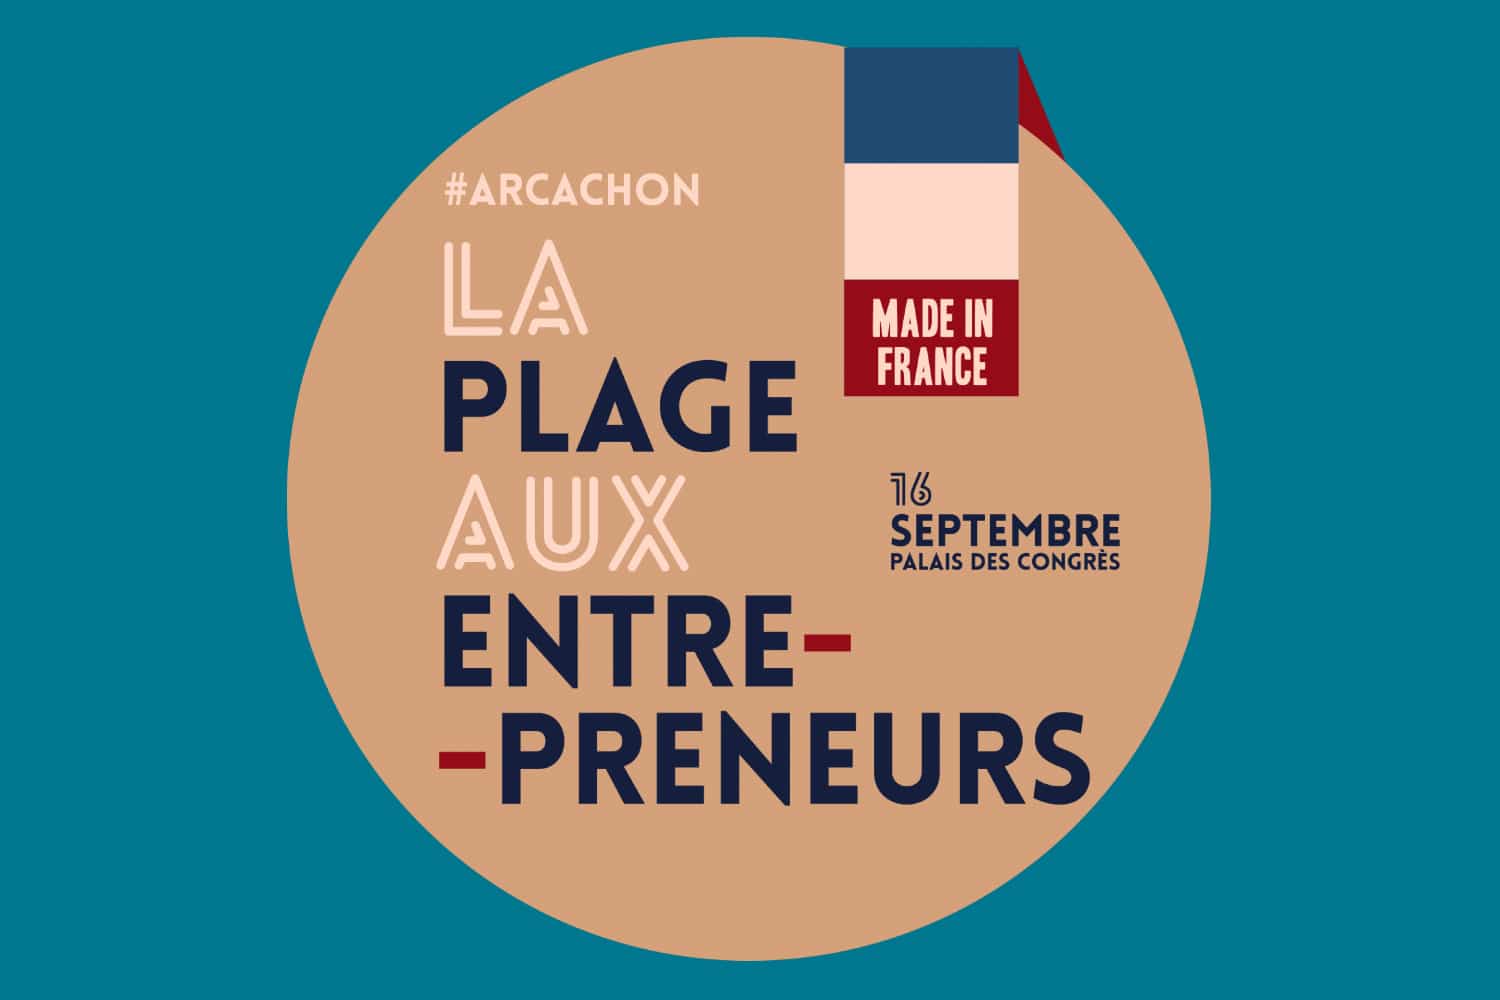 La Plage aux entrepreneurs : une rentrée made in France à Arcachon